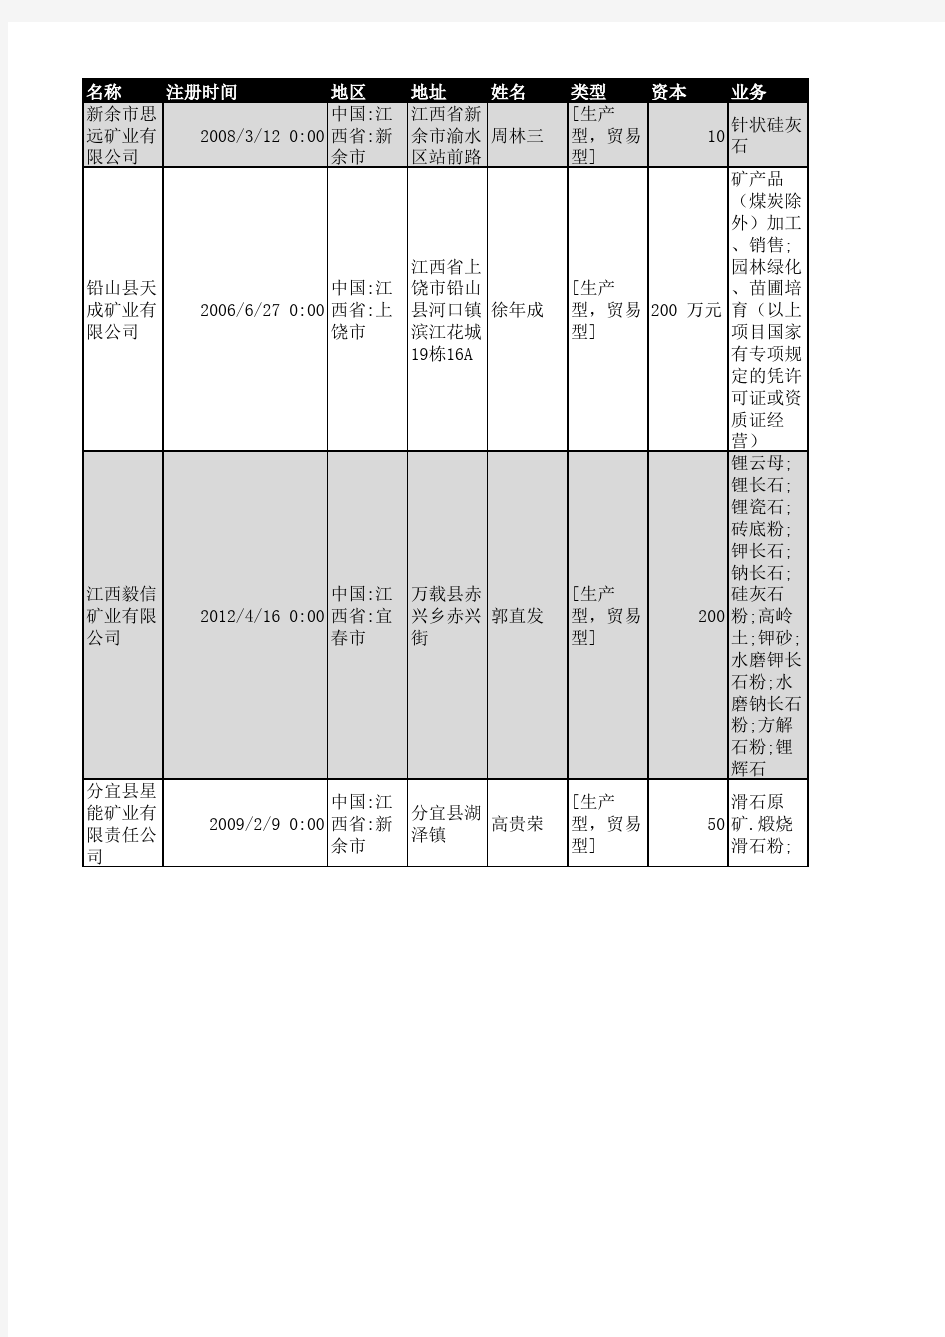 2018年江西省矿业企业名录714家